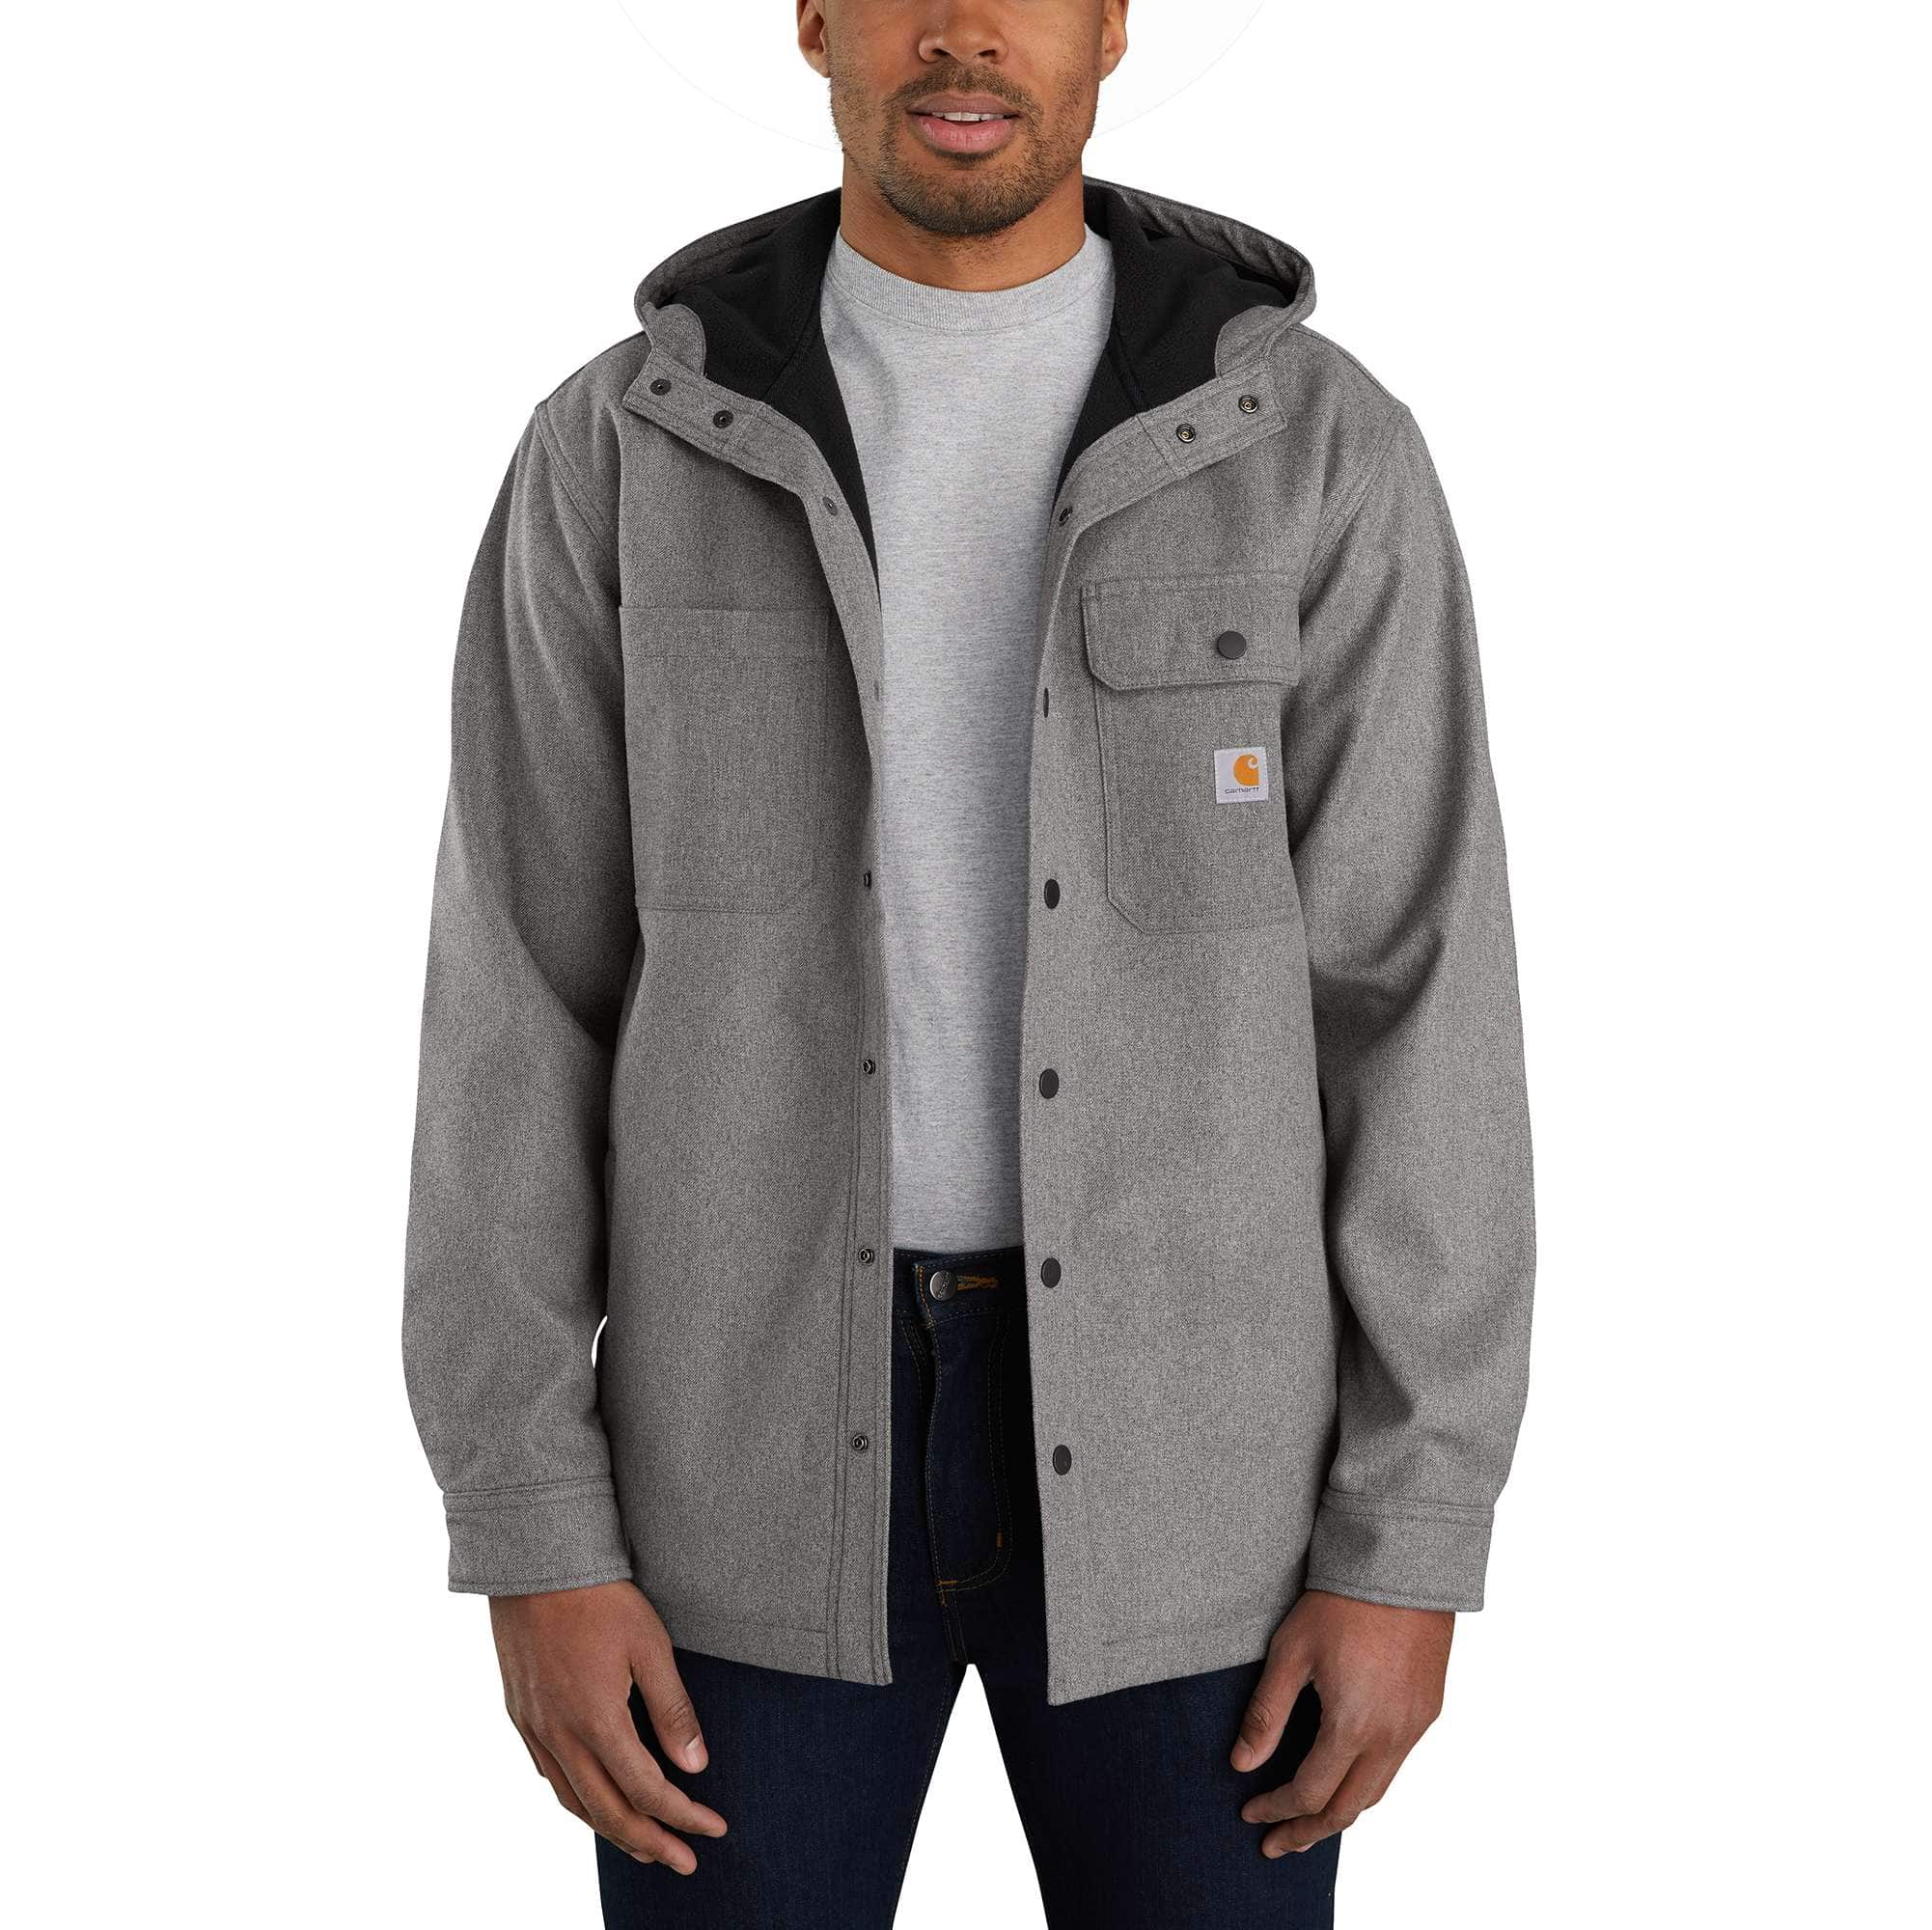 CARHARTT Men's Fleece Lined Shirt Jacket